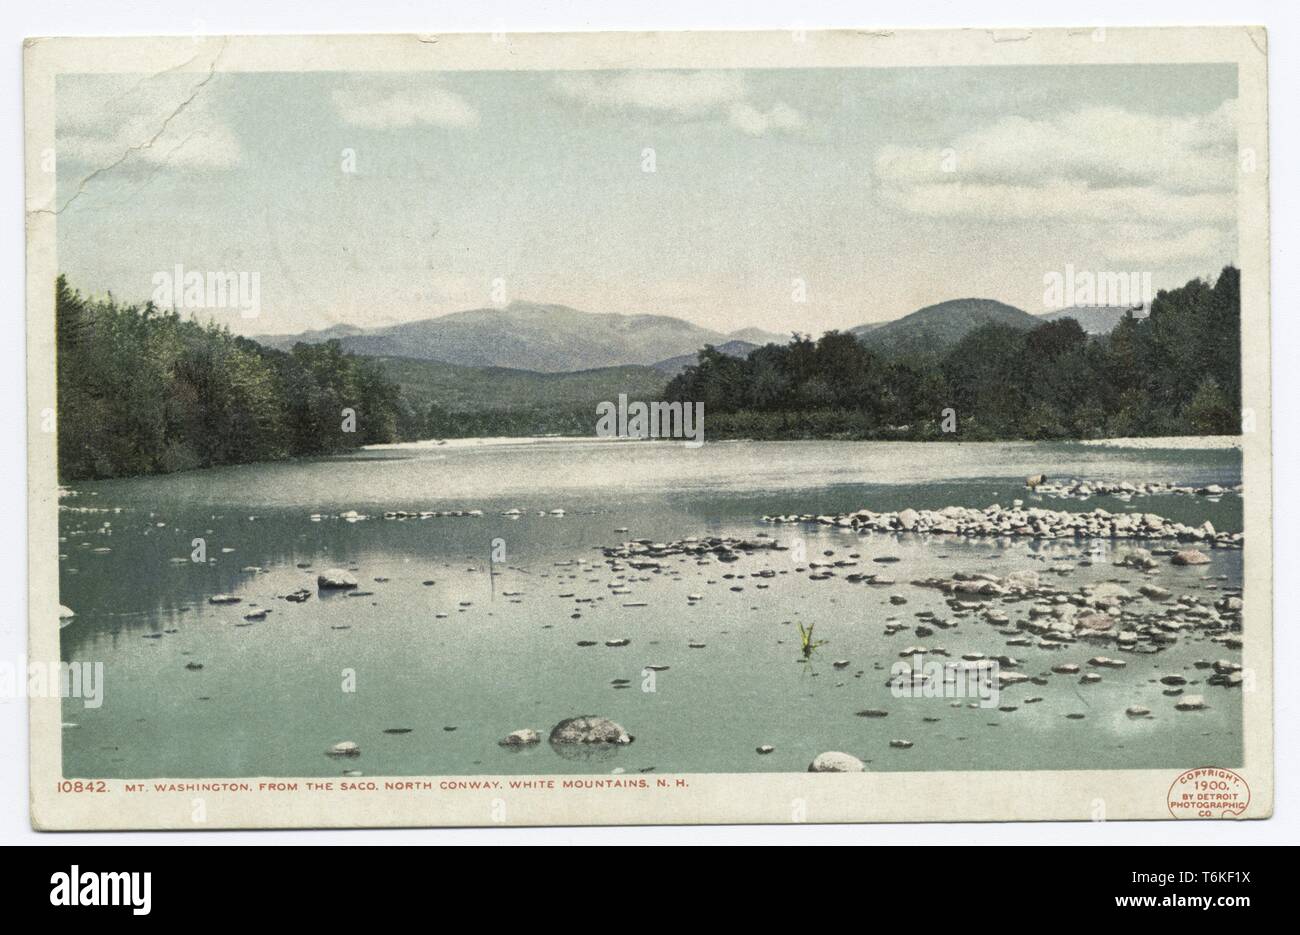 Detroit Publishing Company Ansichtskarte, die den Blick auf den Mount Washington von der Saco River in North Conway, White Mountains, New Hampshire, 1914. Von der New York Public Library. () Stockfoto